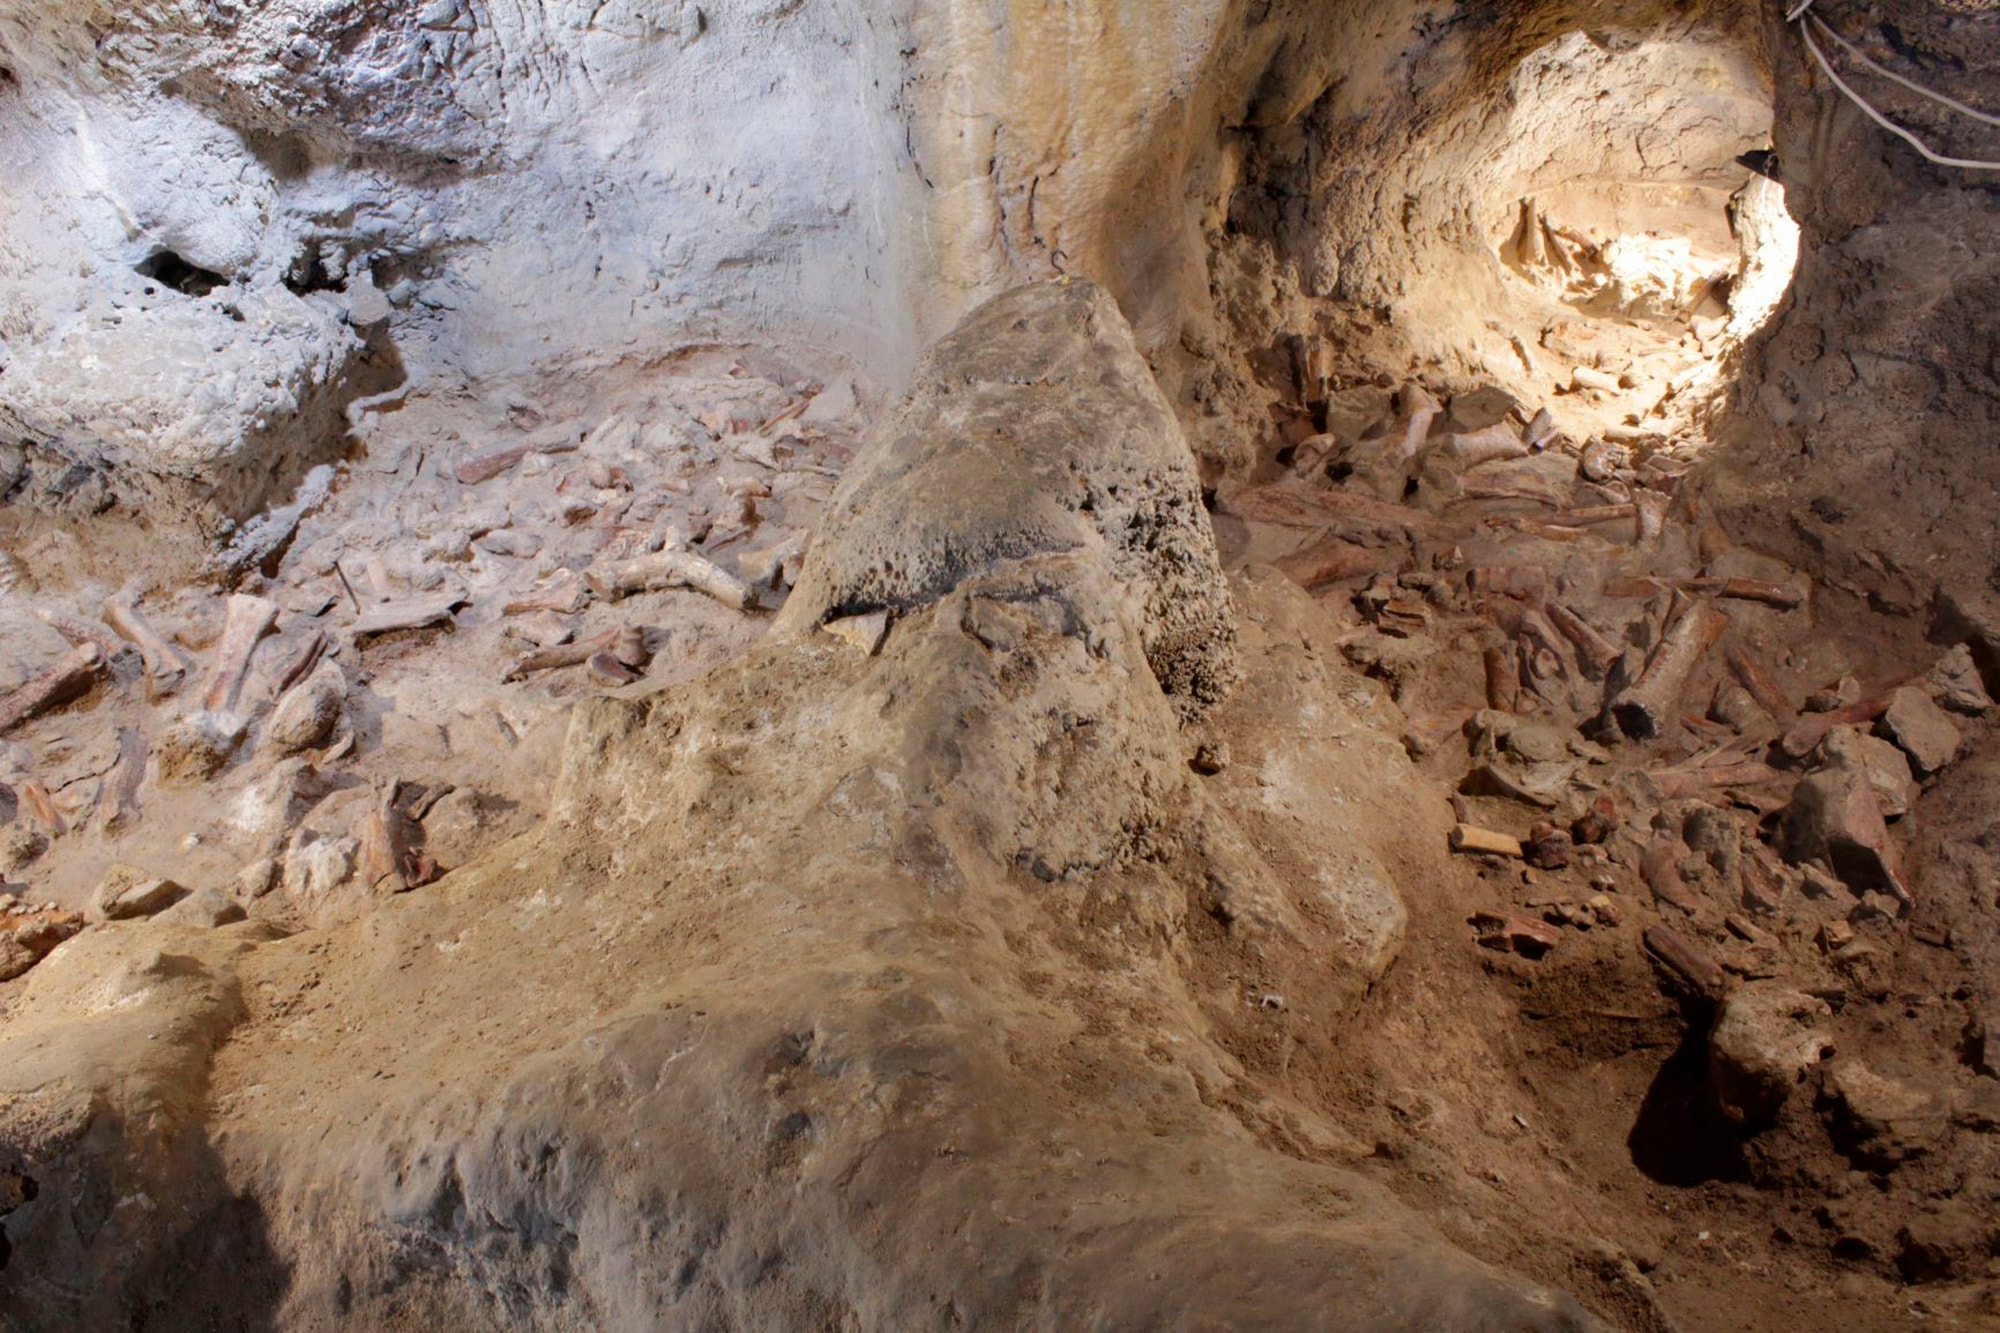 इतालवी संस्कृति मंत्रालय द्वारा जारी यह छवि रोम के पास एक गुफा दिखाती है जहाँ जीवाश्म निष्कर्षों की खोज की गई थी। (एपी)